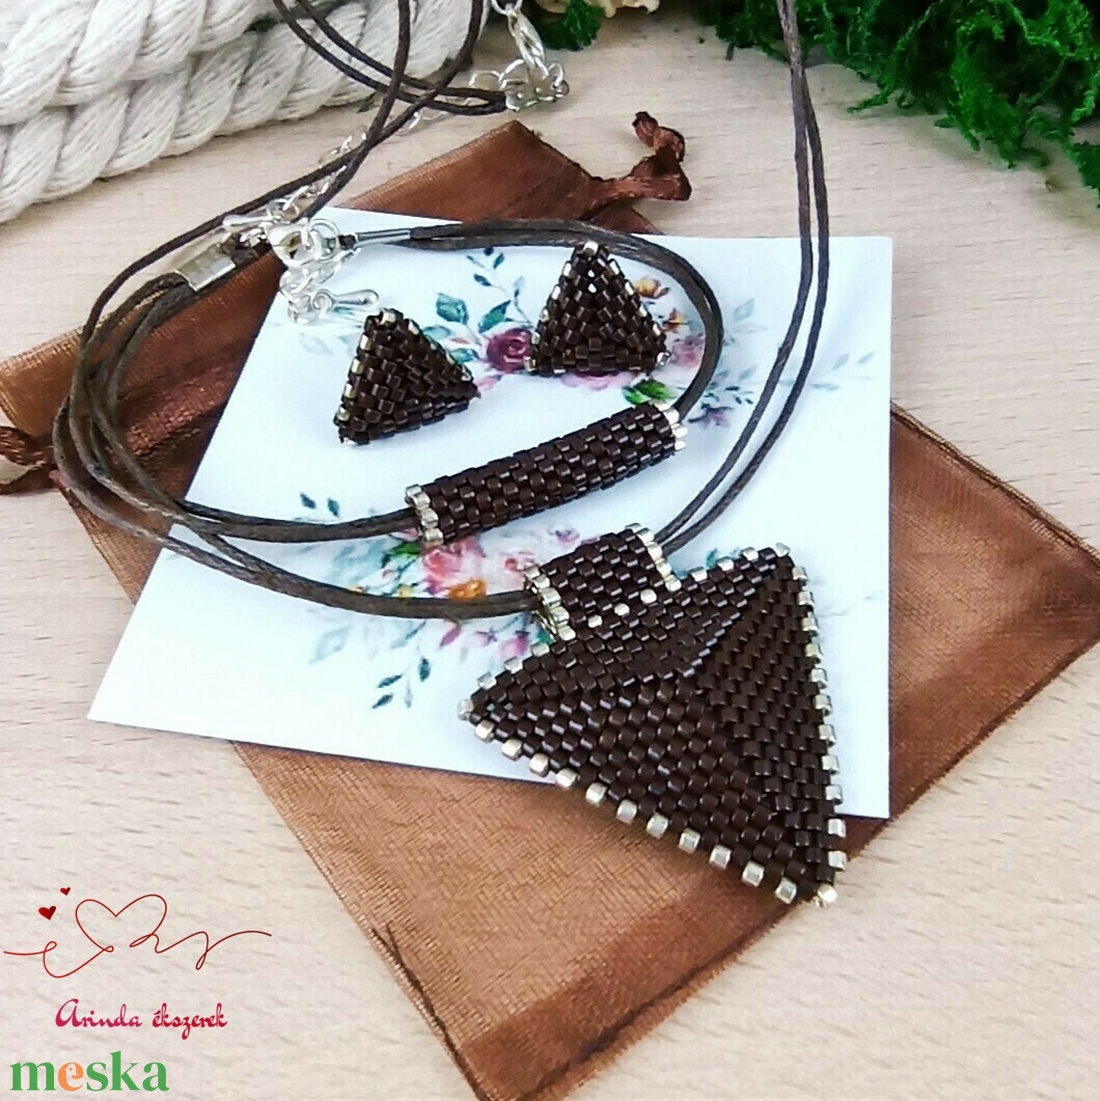 Csoki háromszög nyaklánc karkötő fülbevaló egyedi gyöngyékszer anyák napja ballagás évzáró karácsony szülinap névnap - ékszer - ékszerszett - Meska.hu